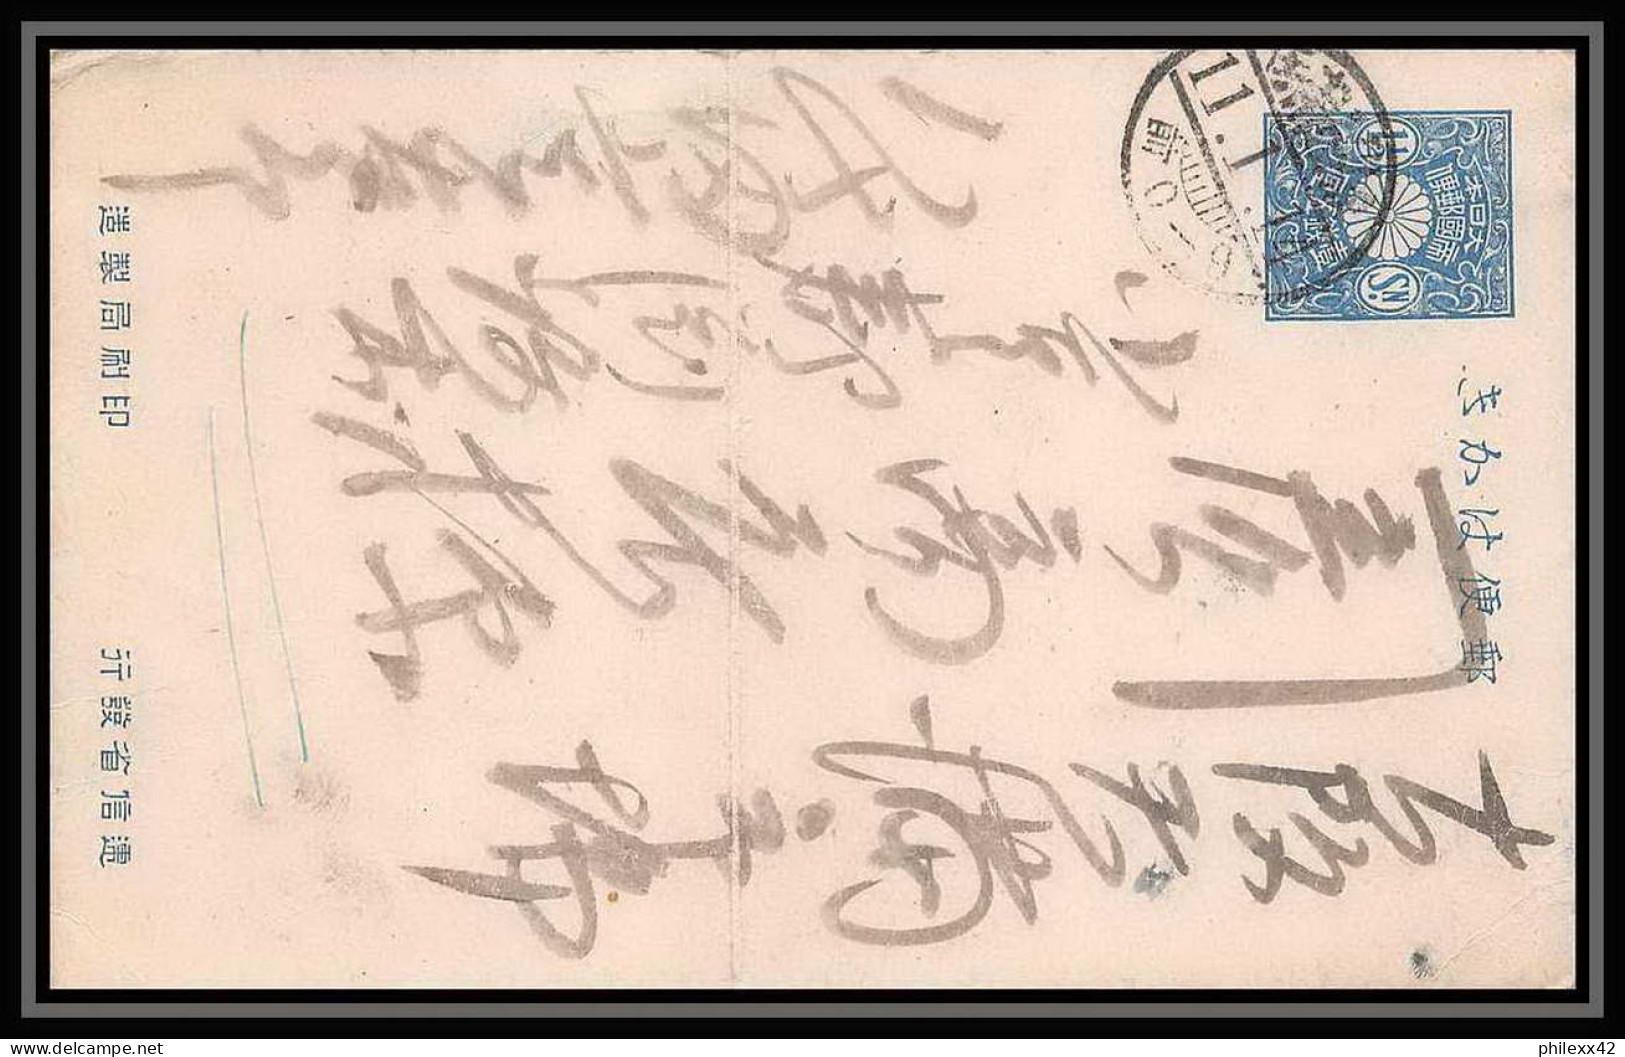 1847/ Japon (Japan) Entier Stationery Carte Postale (postcard) N°39 1 1/2 BLEU 1914 - Postales